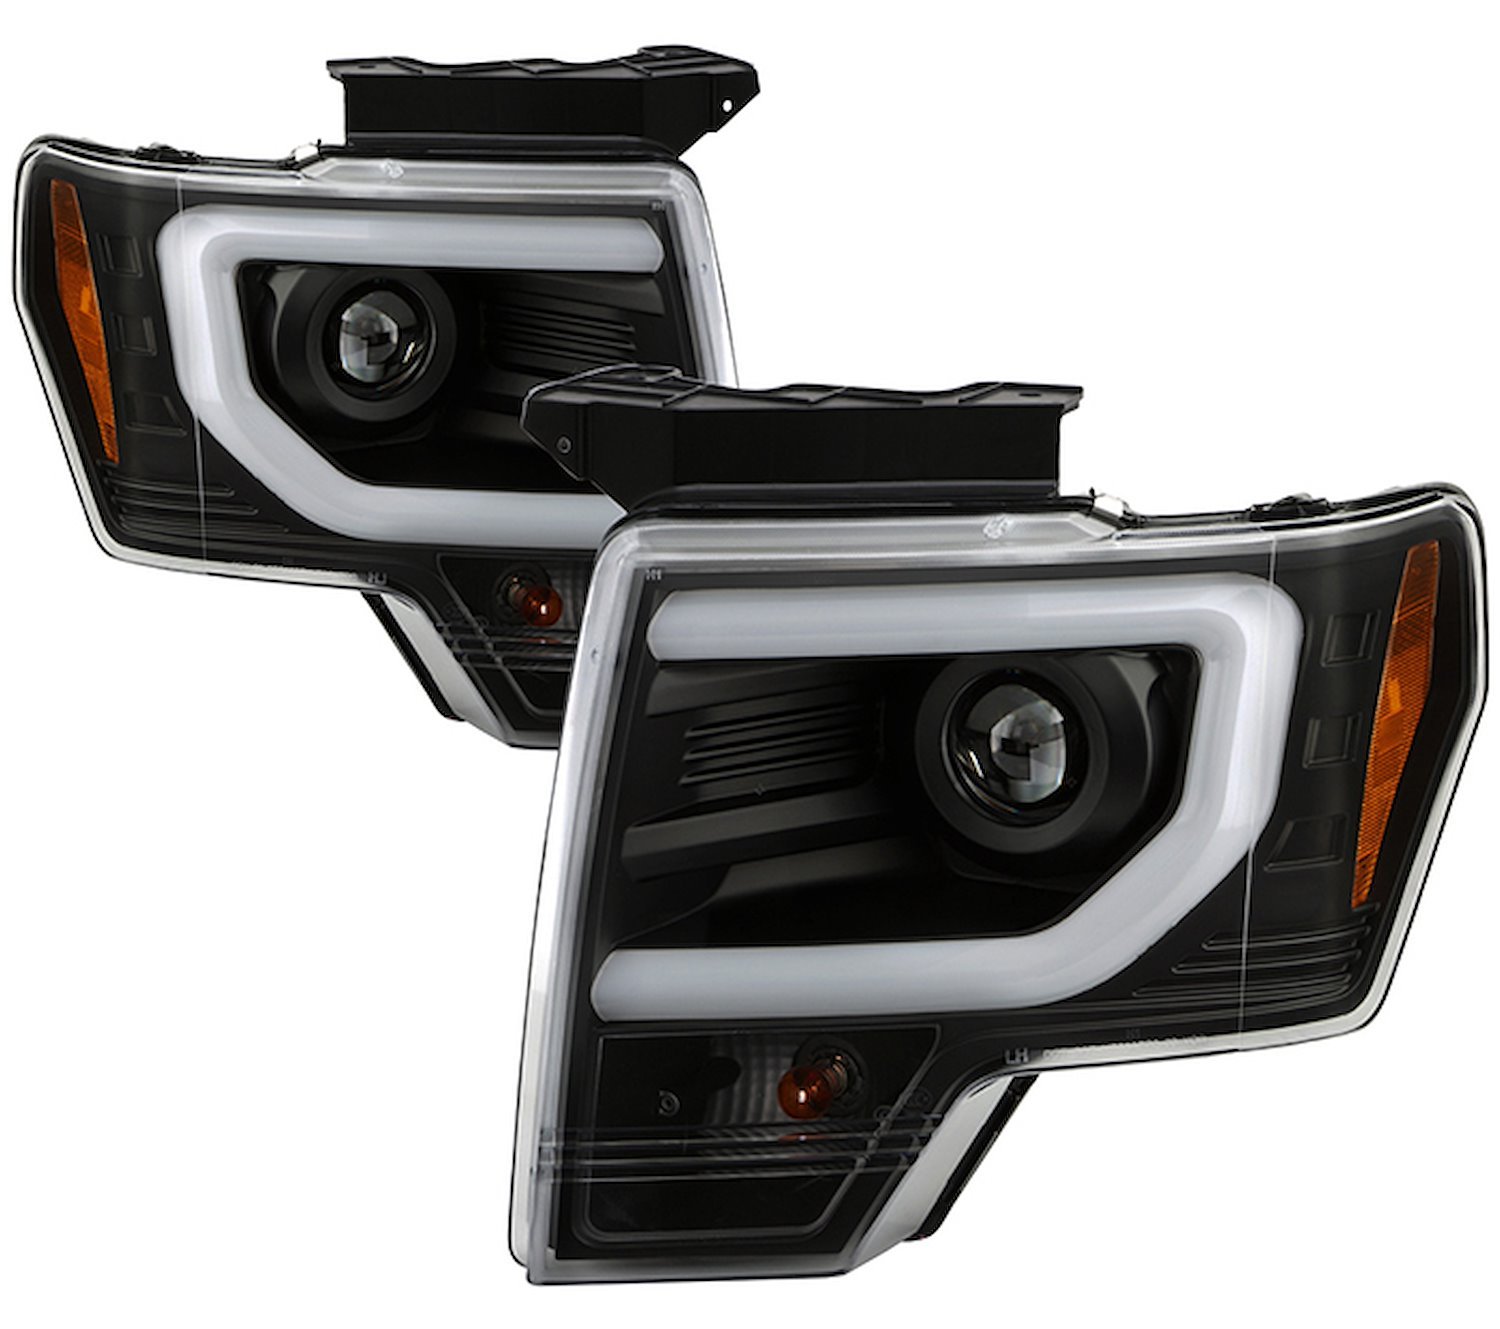 APEX Series Light Bar Projector Headlights 2009-2014 Ford F-150 [Black] Halogen Turn Signal